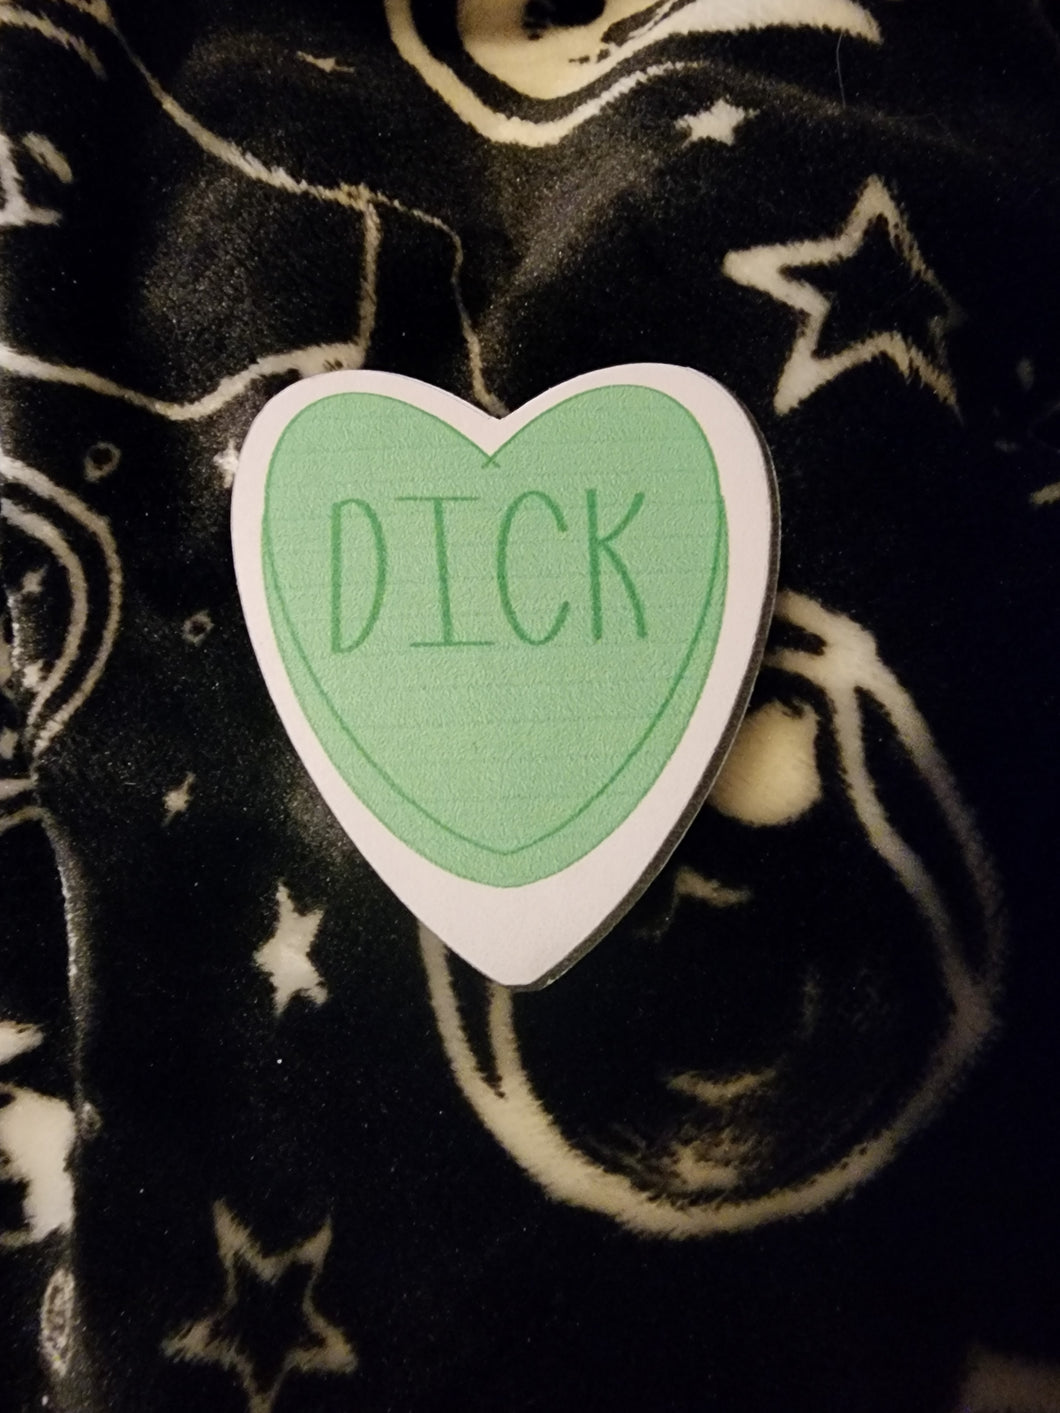 Dick Candy Heart Sticker